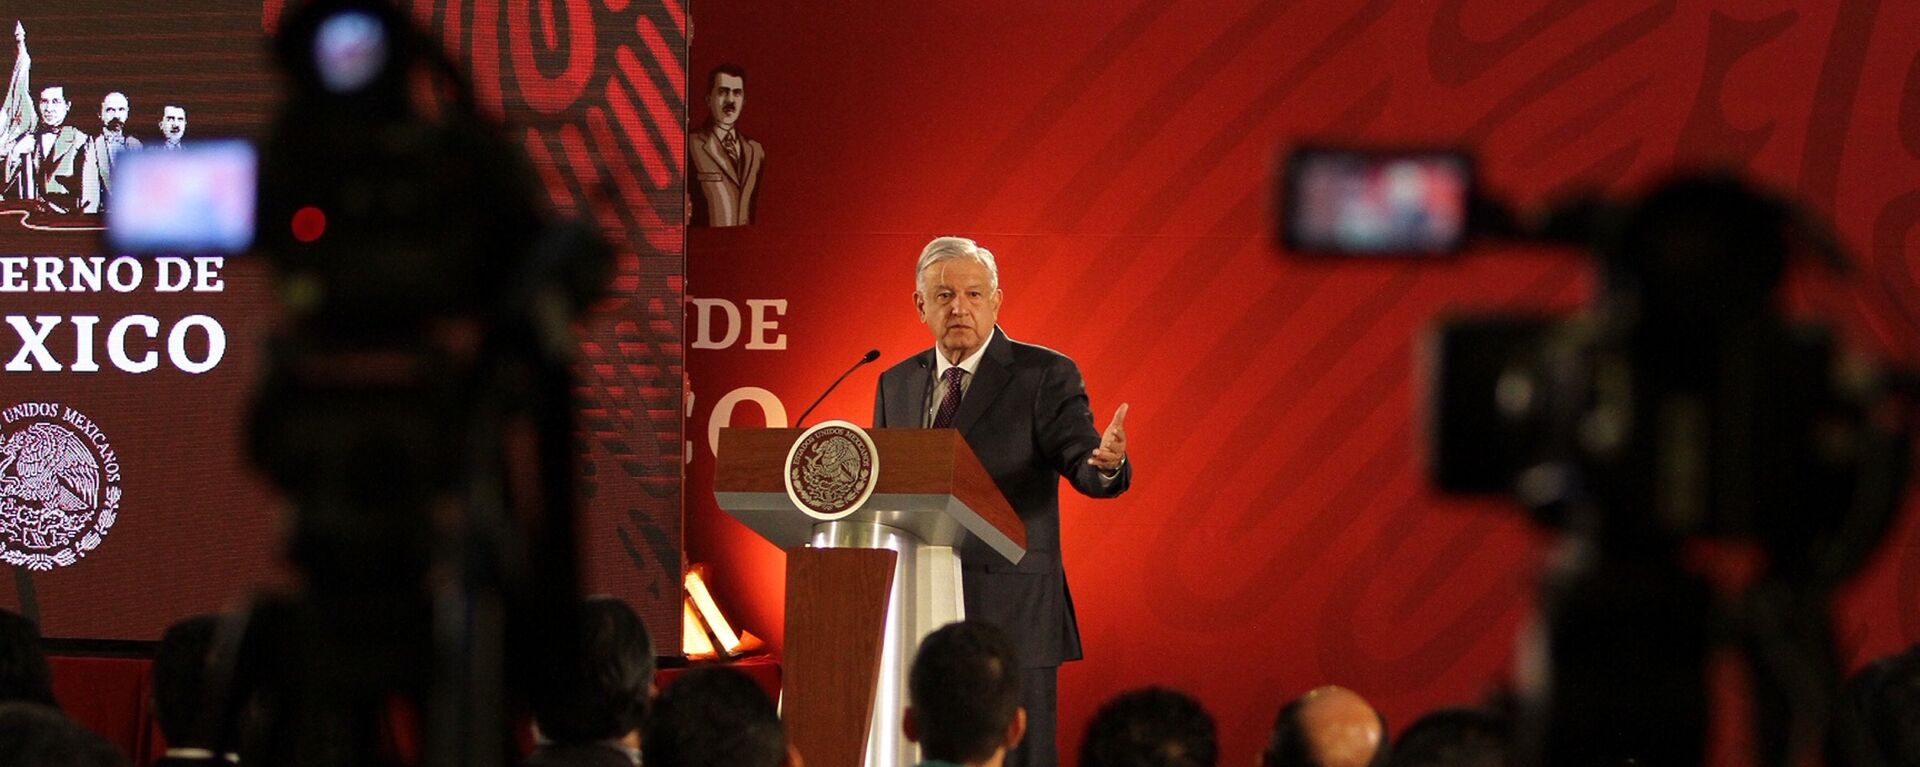 Andrés Manuel López Obrador, presidente de México - Sputnik Mundo, 1920, 23.08.2021